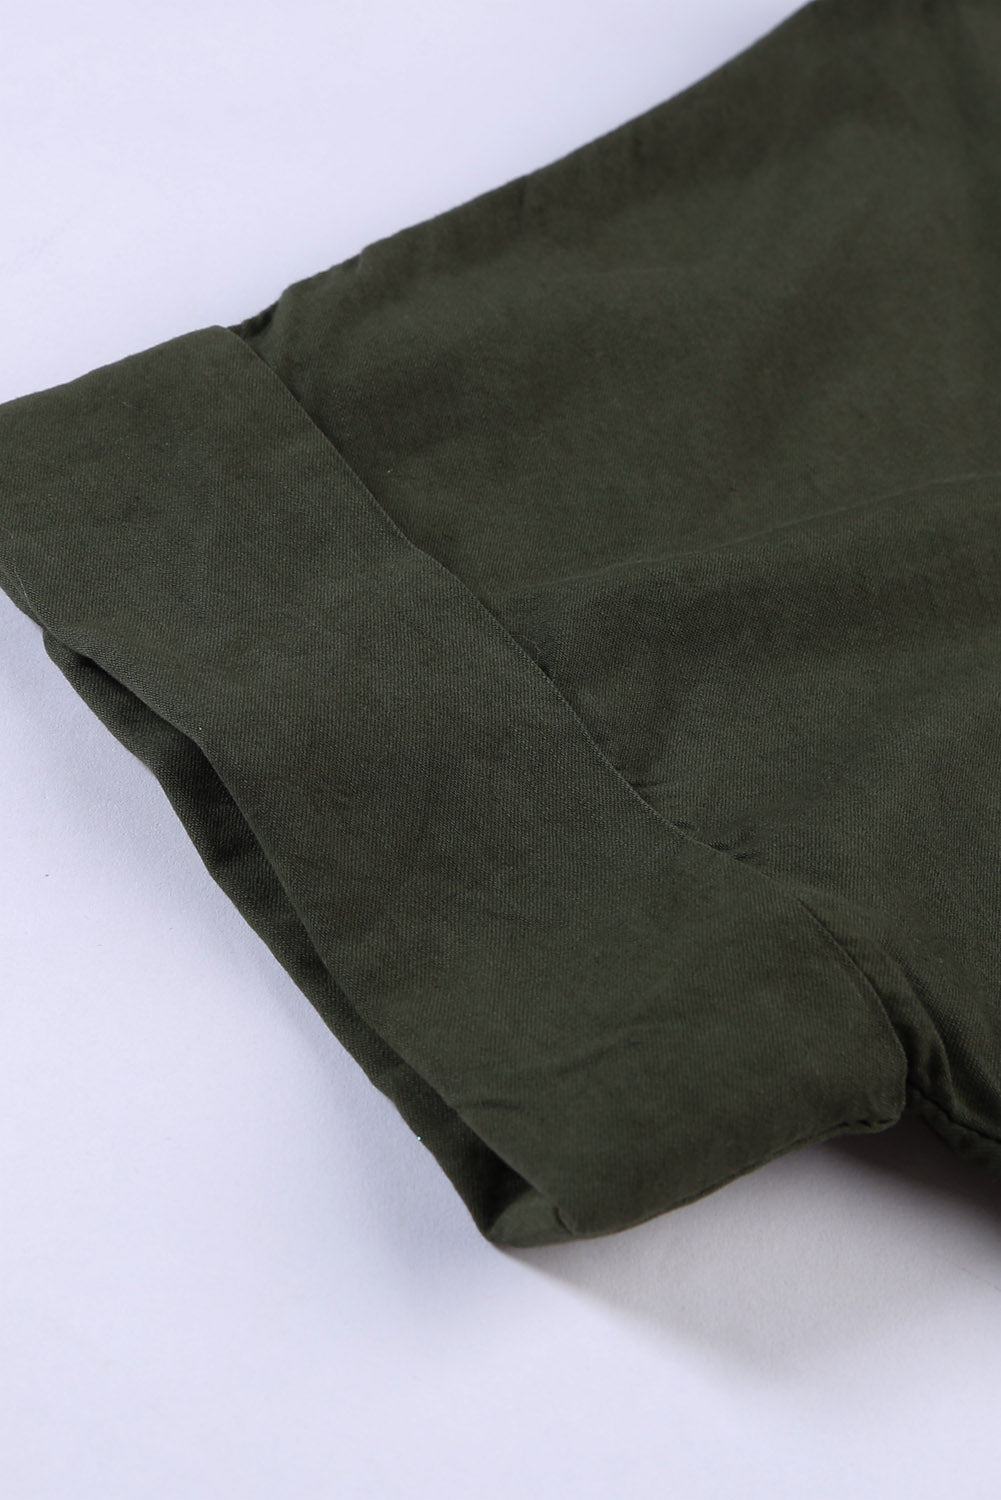 Camicia in denim a maniche corte con colletto rovesciato verde